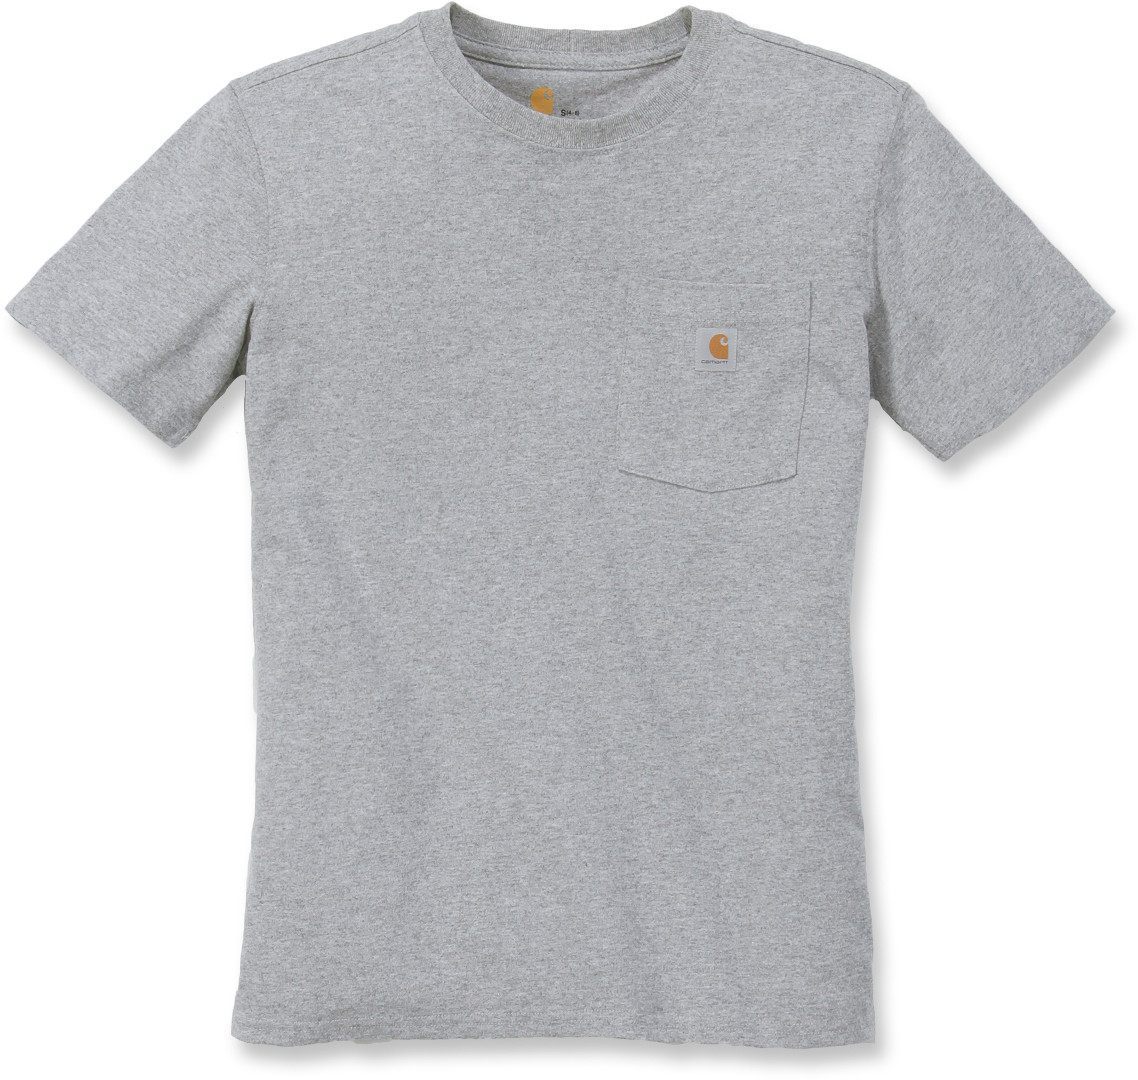 Carhartt Workwear Pocket Camiseta para mujeres - Gris (L)